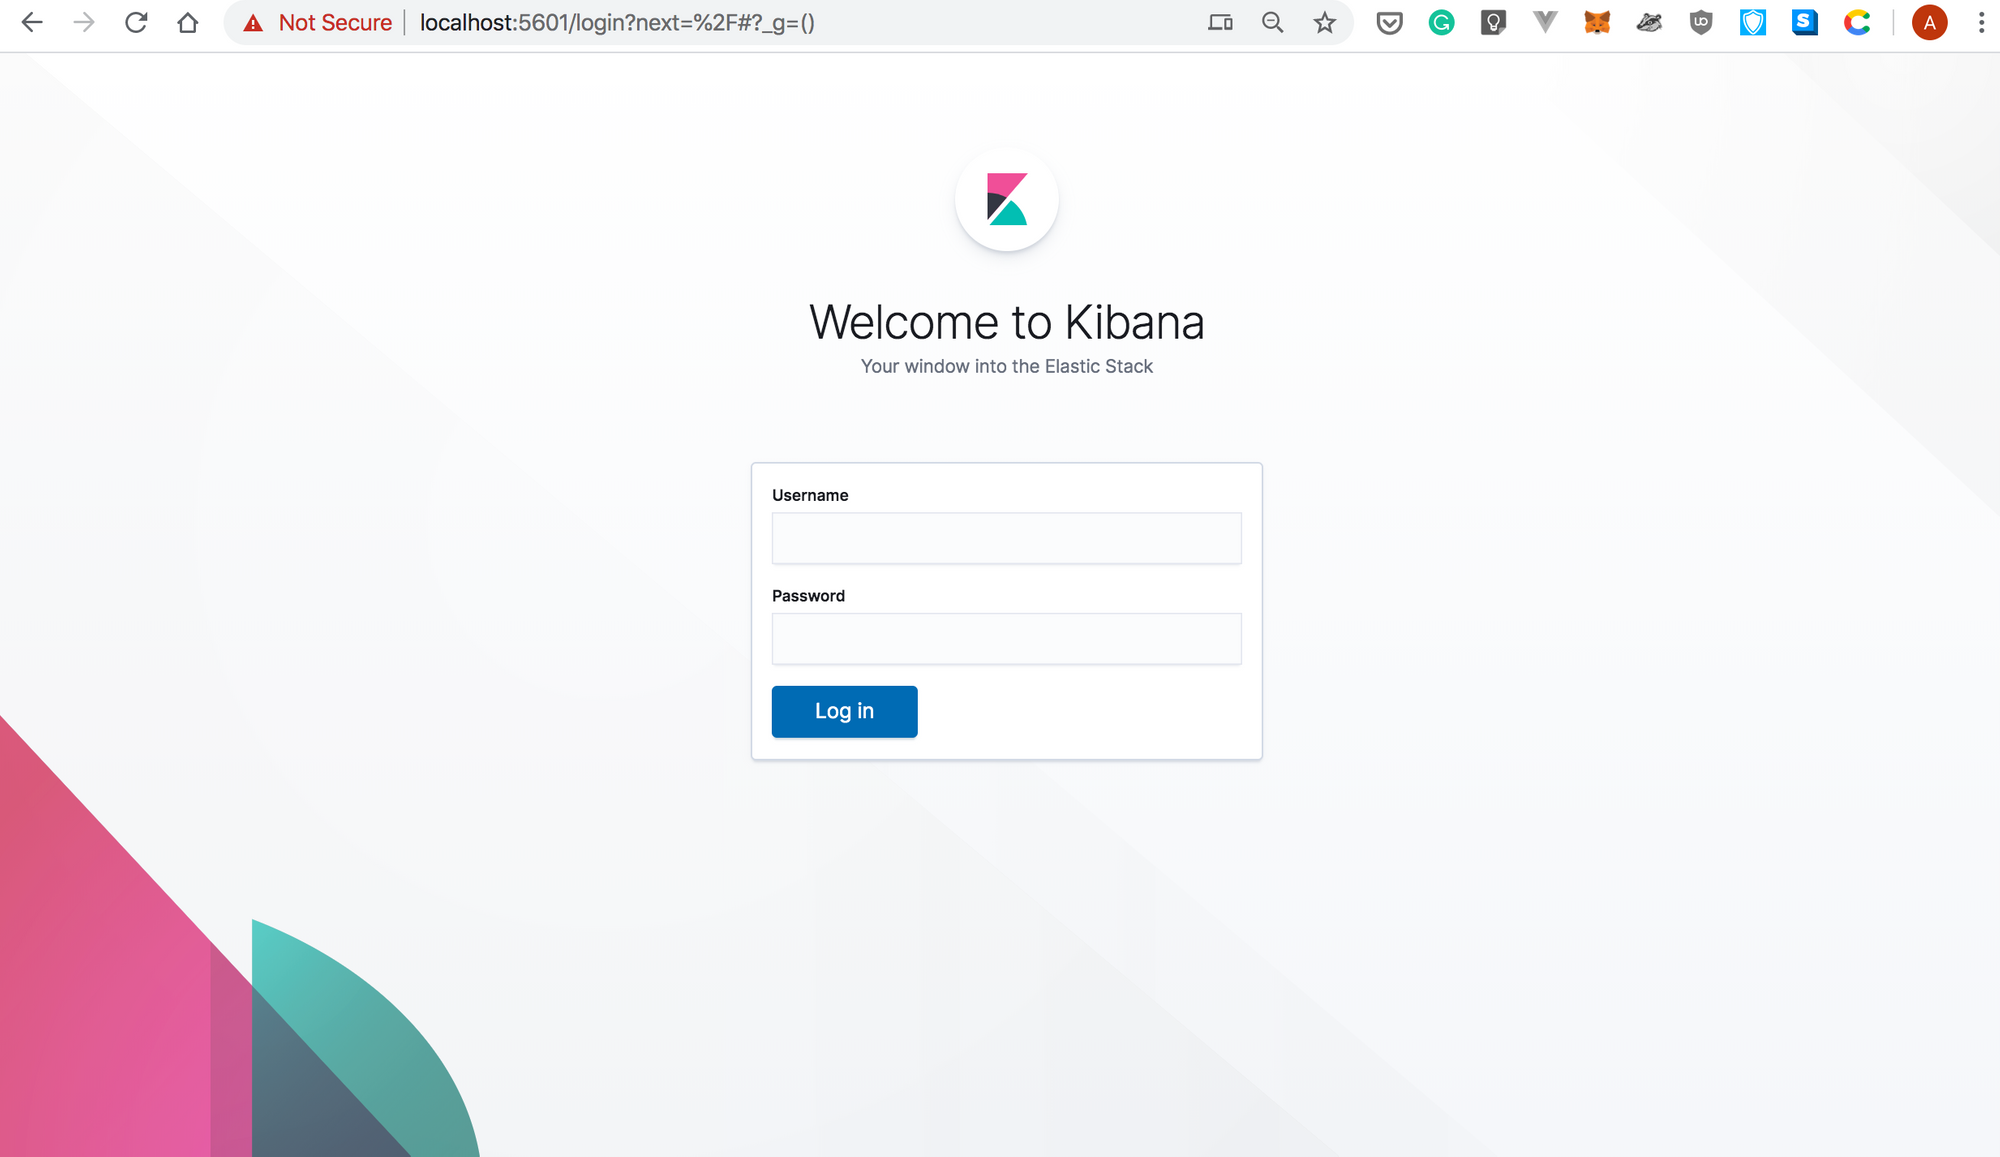 Kibana welcome screen